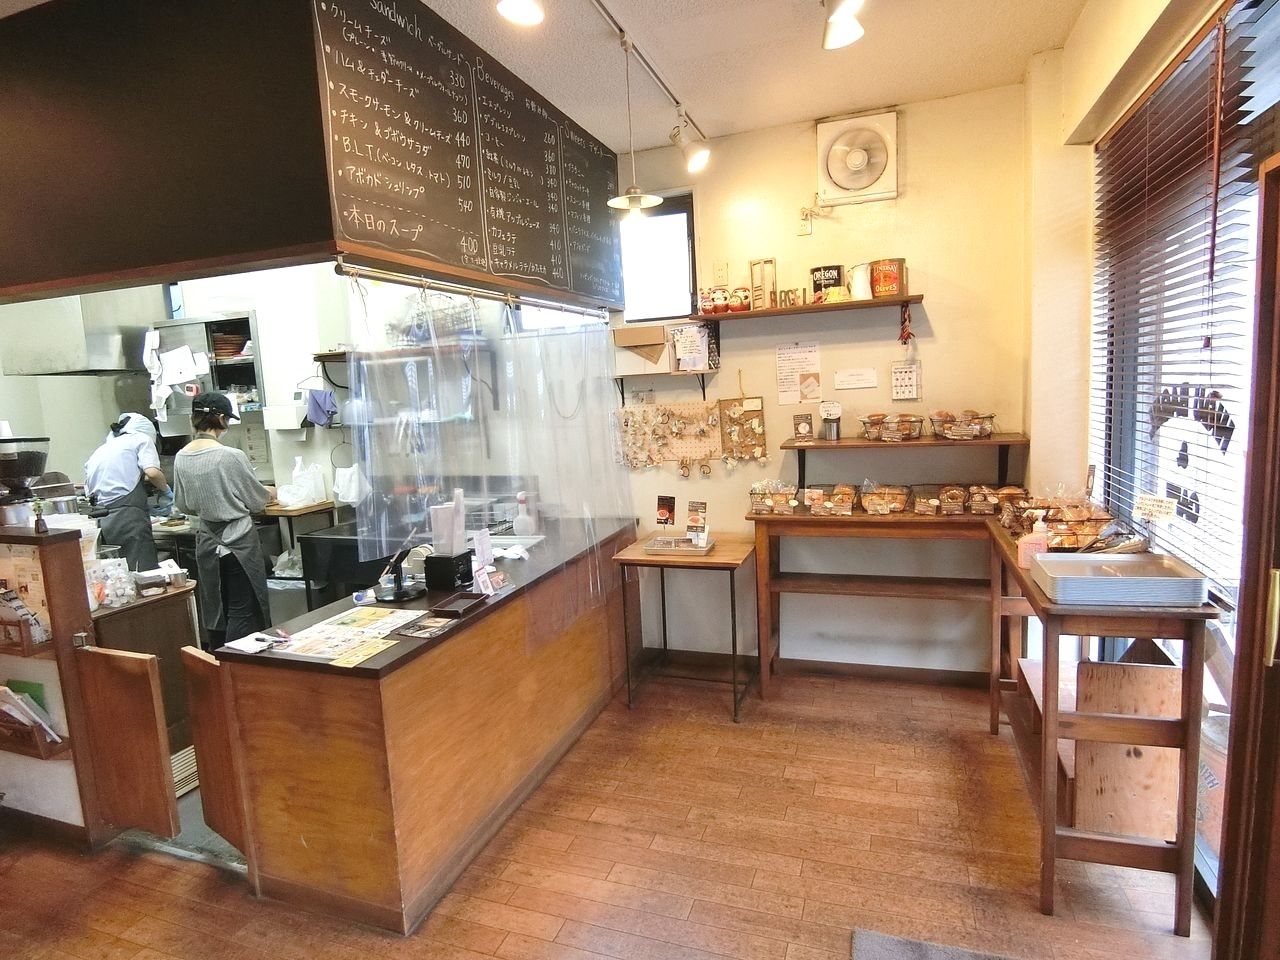 HIGU BAGEL&CAFE（ヒグベーグル＆カフェ）